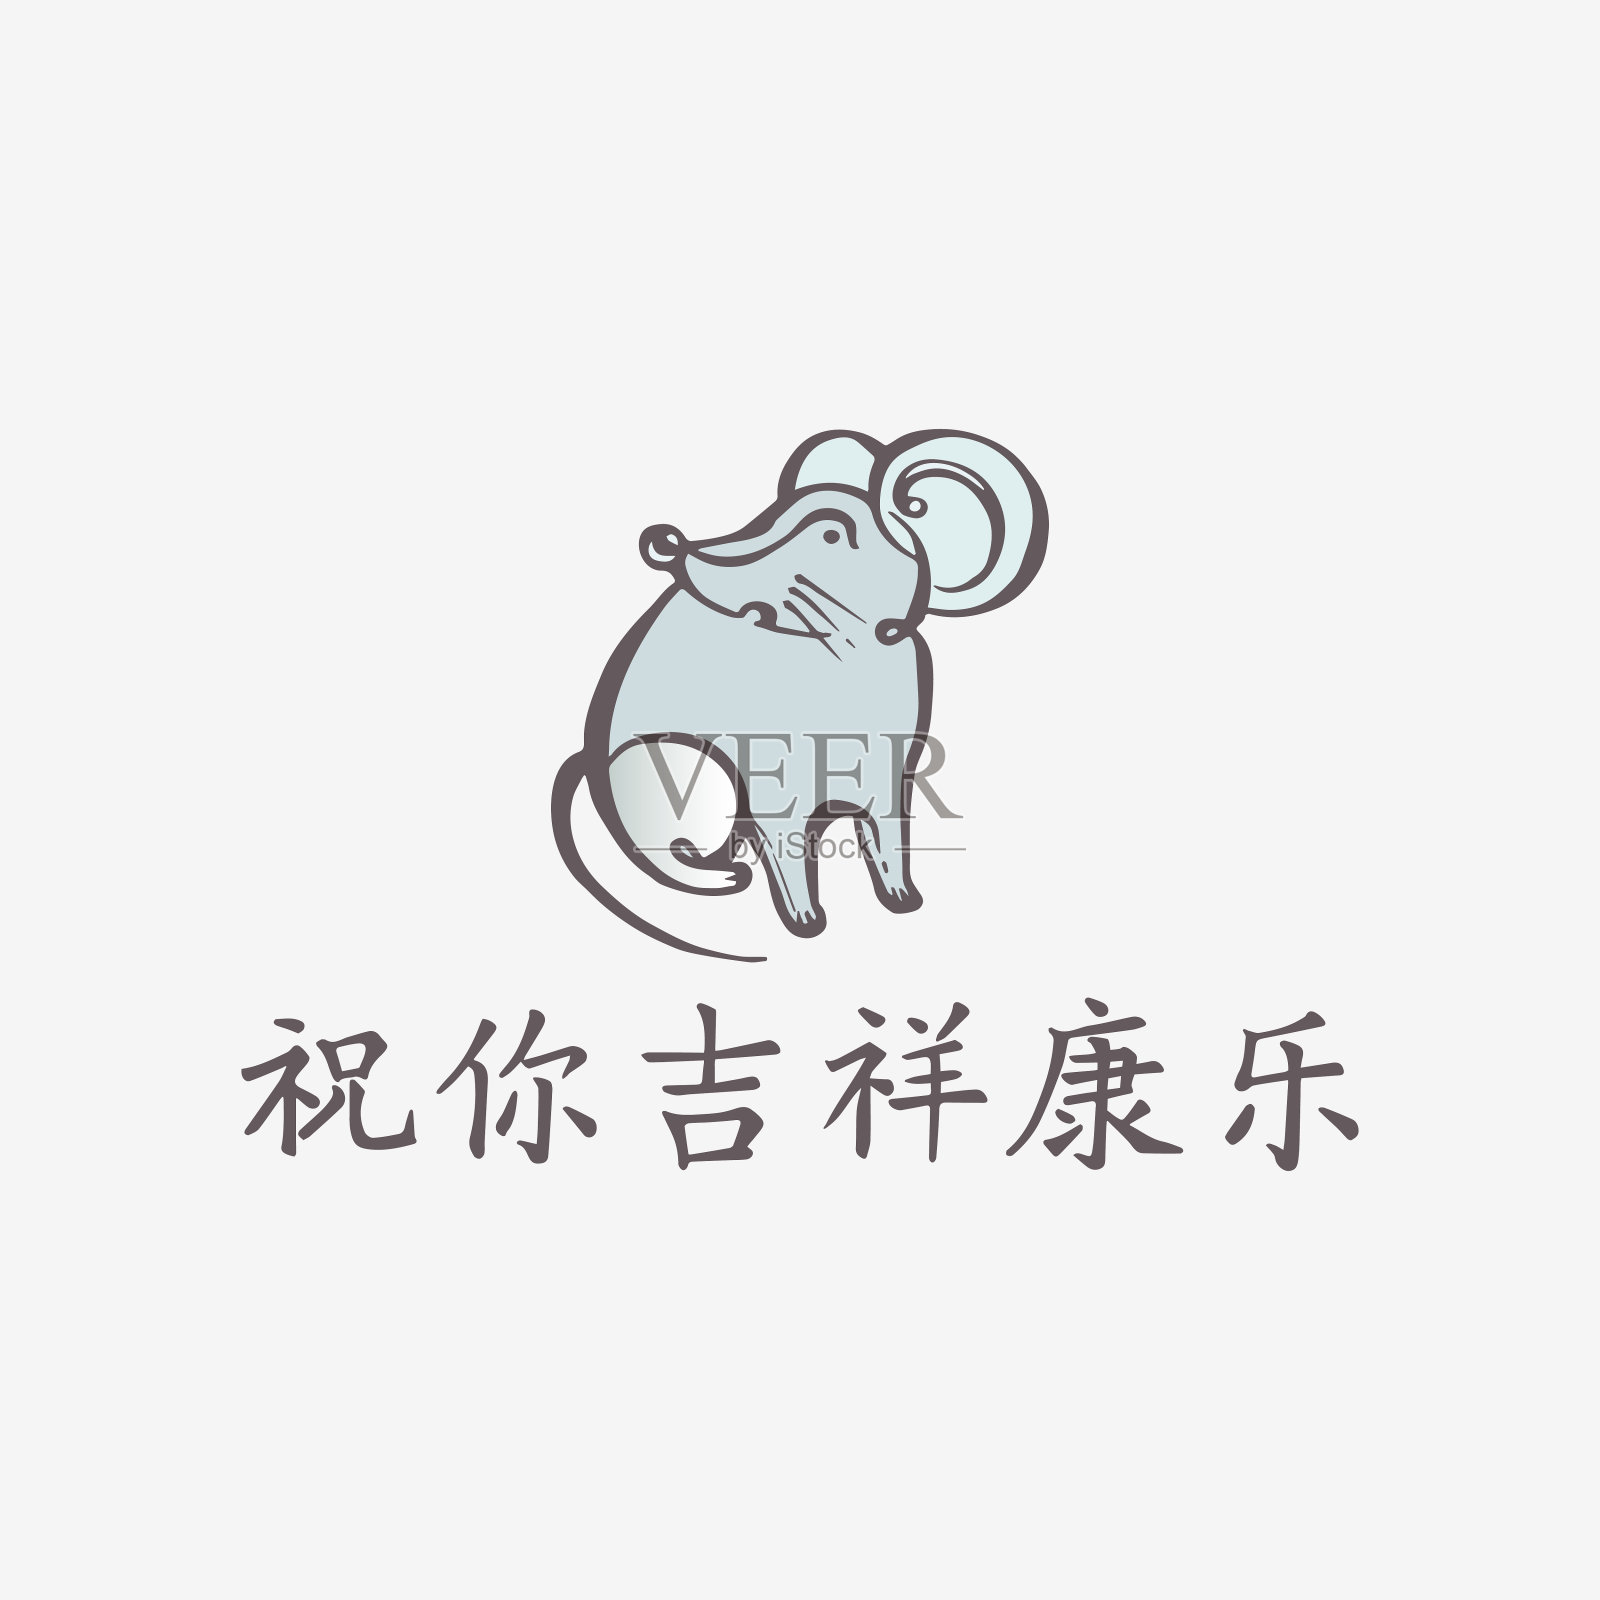 有老鼠和中文文字的中国新年贺卡设计元素图片